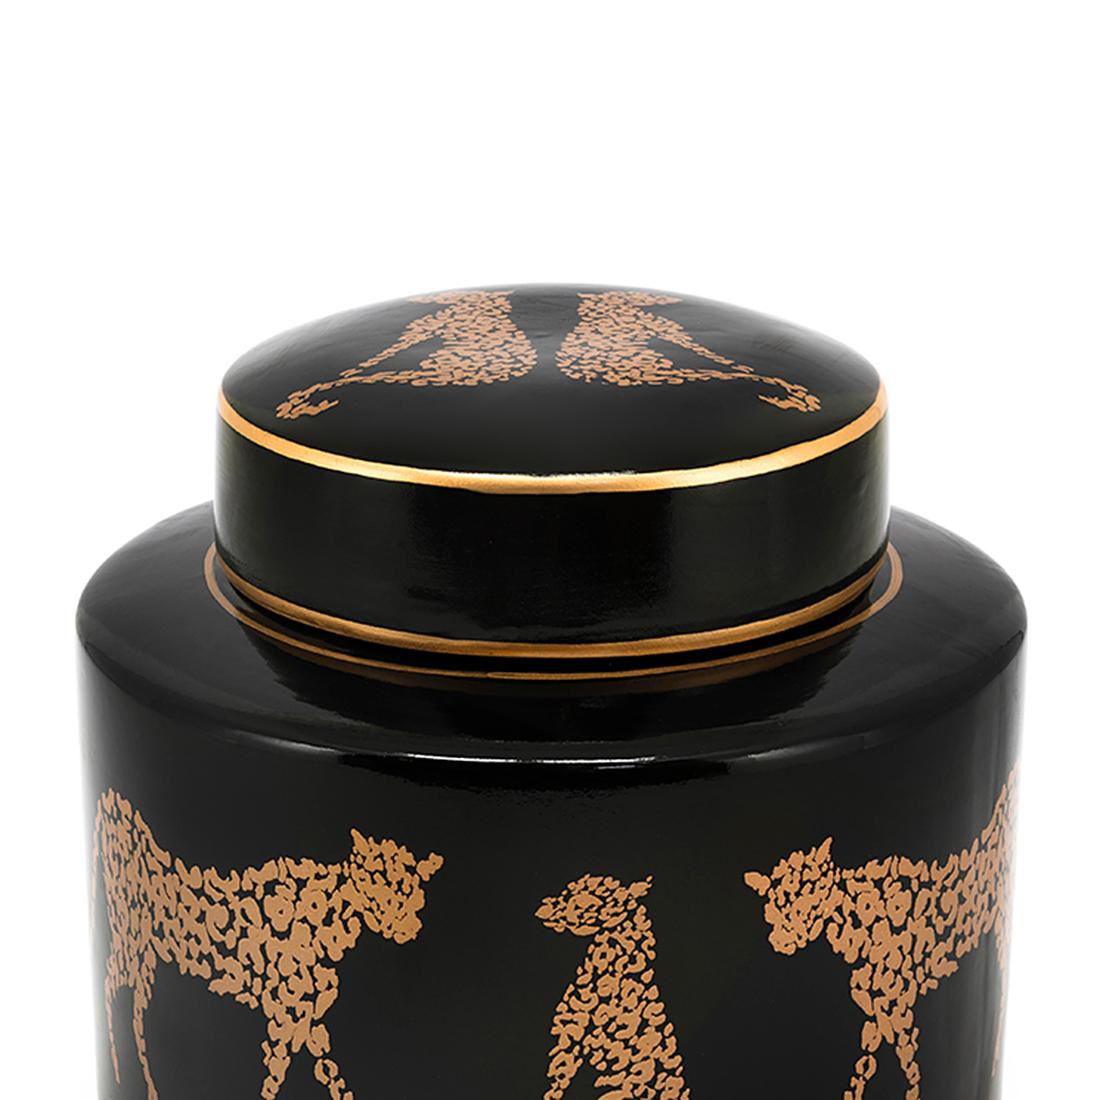 Box Leopard aus Keramik in schwarz
mit Leoparden beenden. Schachtel mit Deckel.
Auch in weißer Ausführung erhältlich.